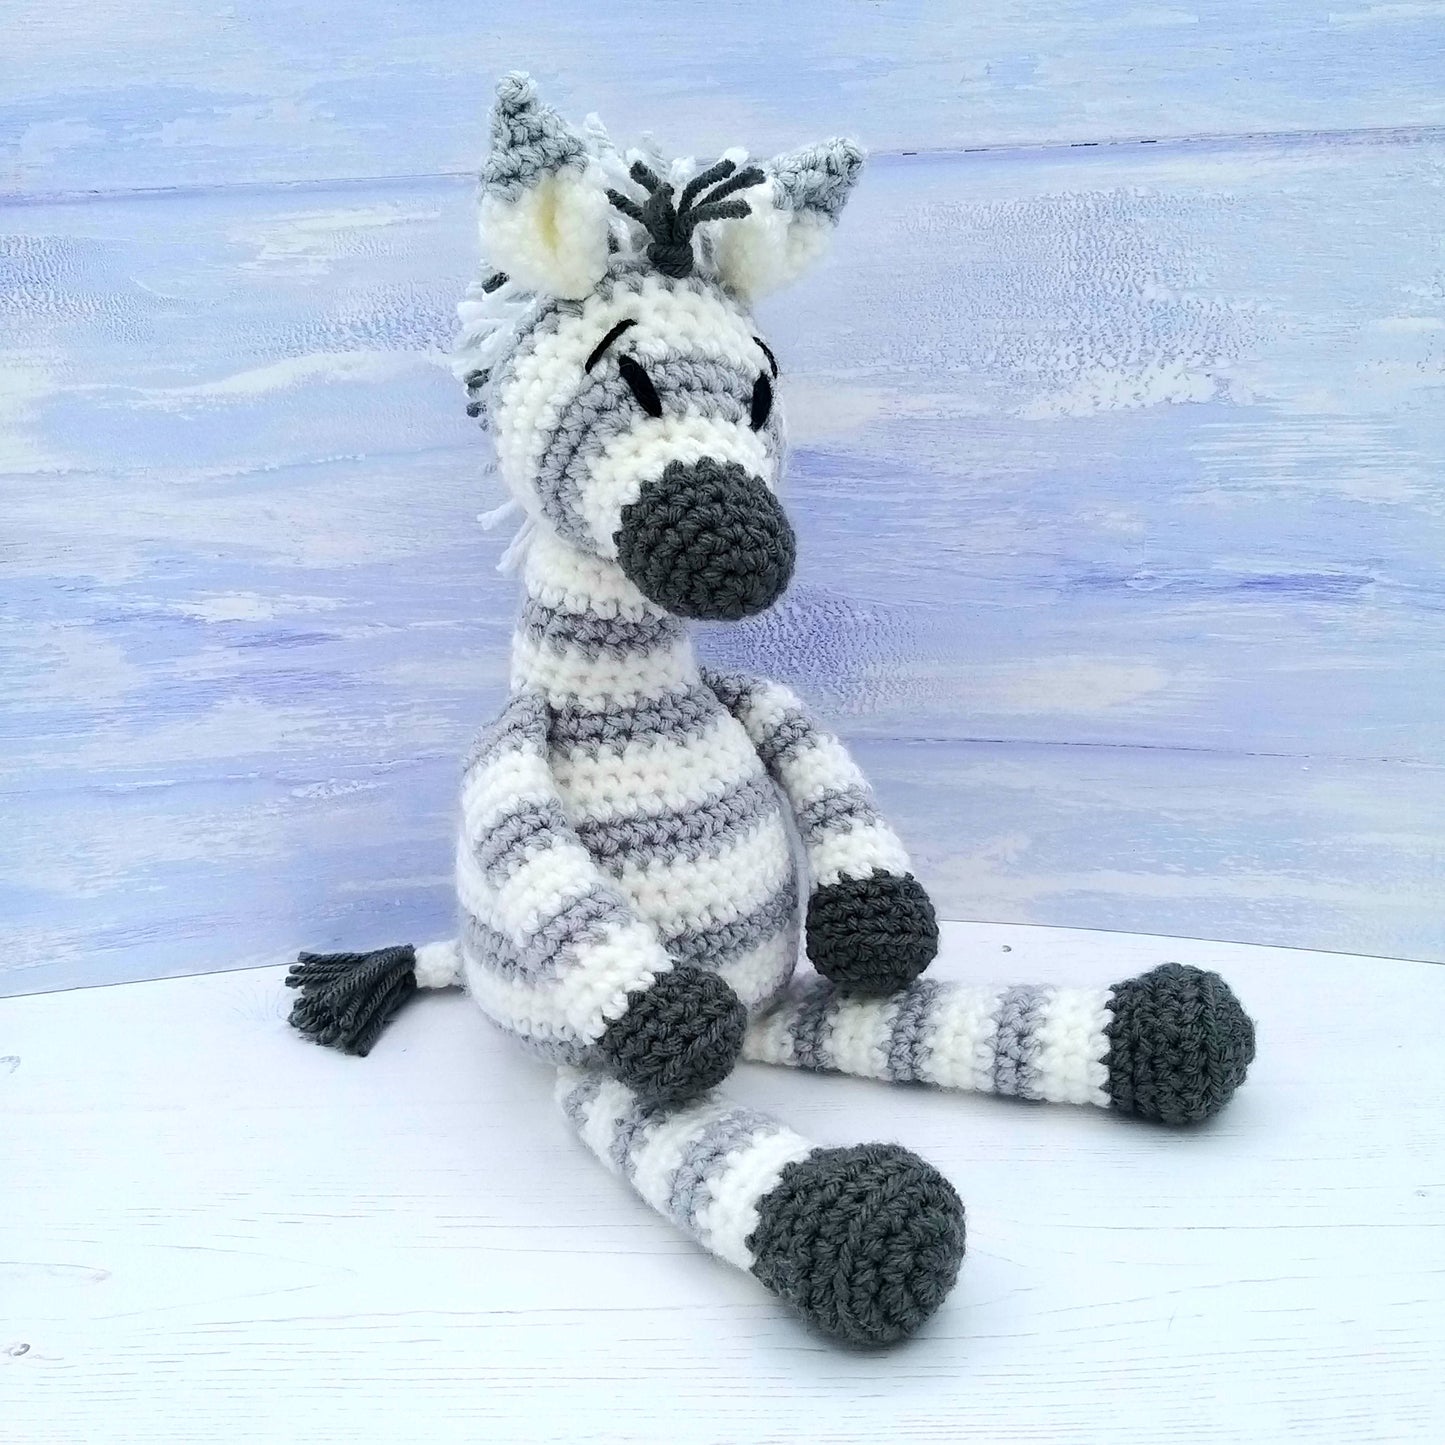 Julie the Zebra Luxury Crochet Kit